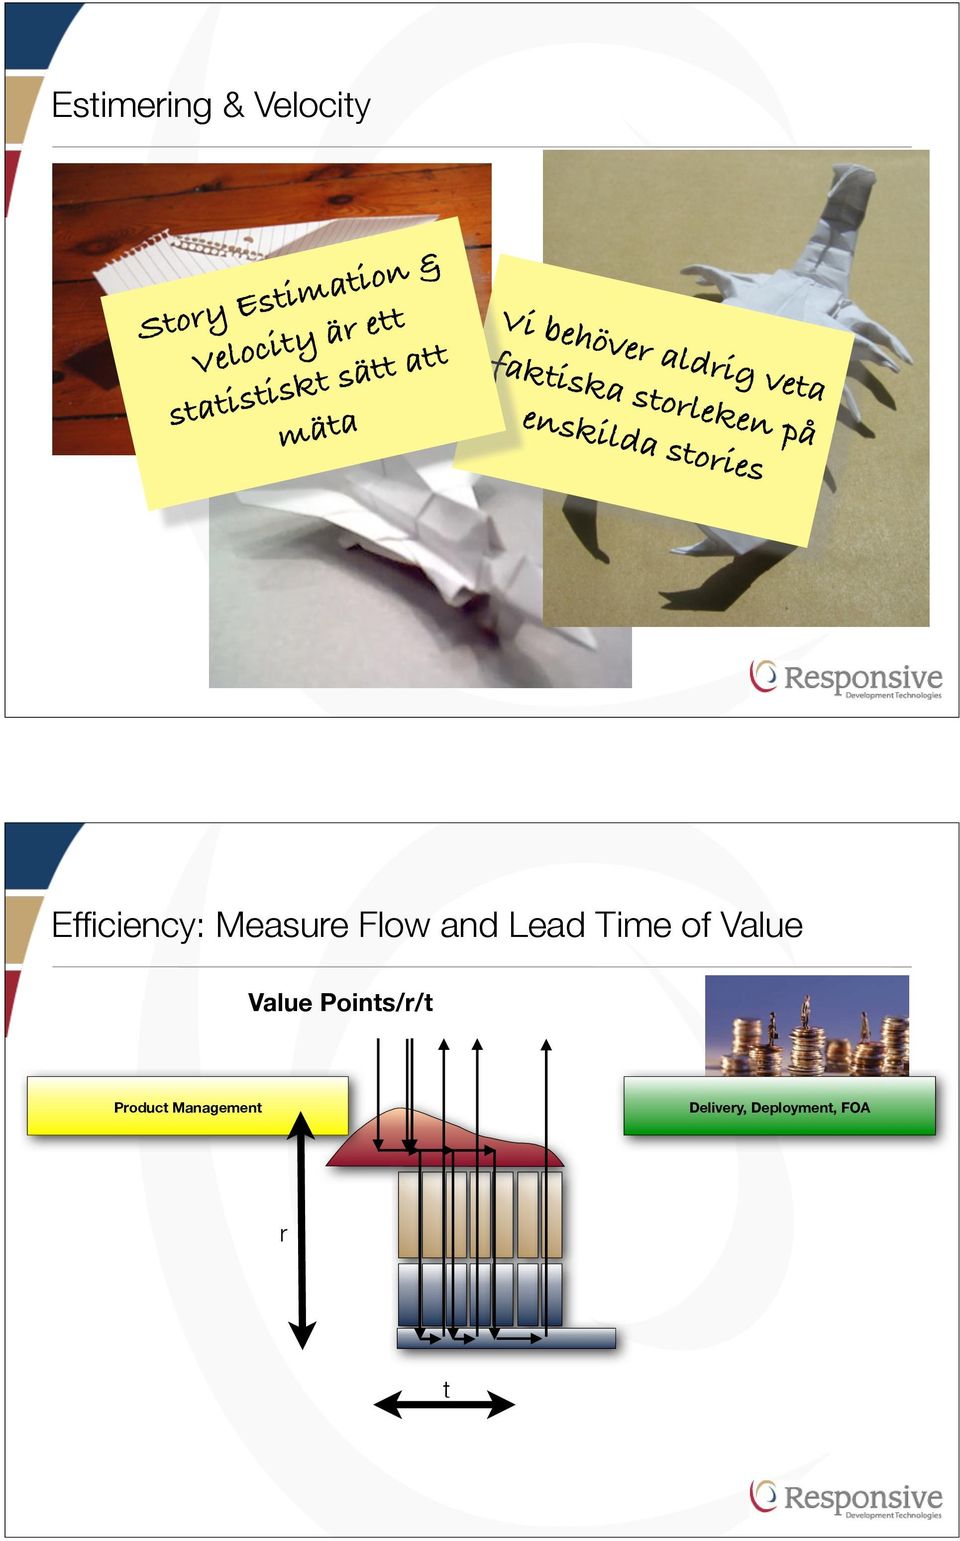 enskilda stories Efficiency: Measure Flow and Lead Time of